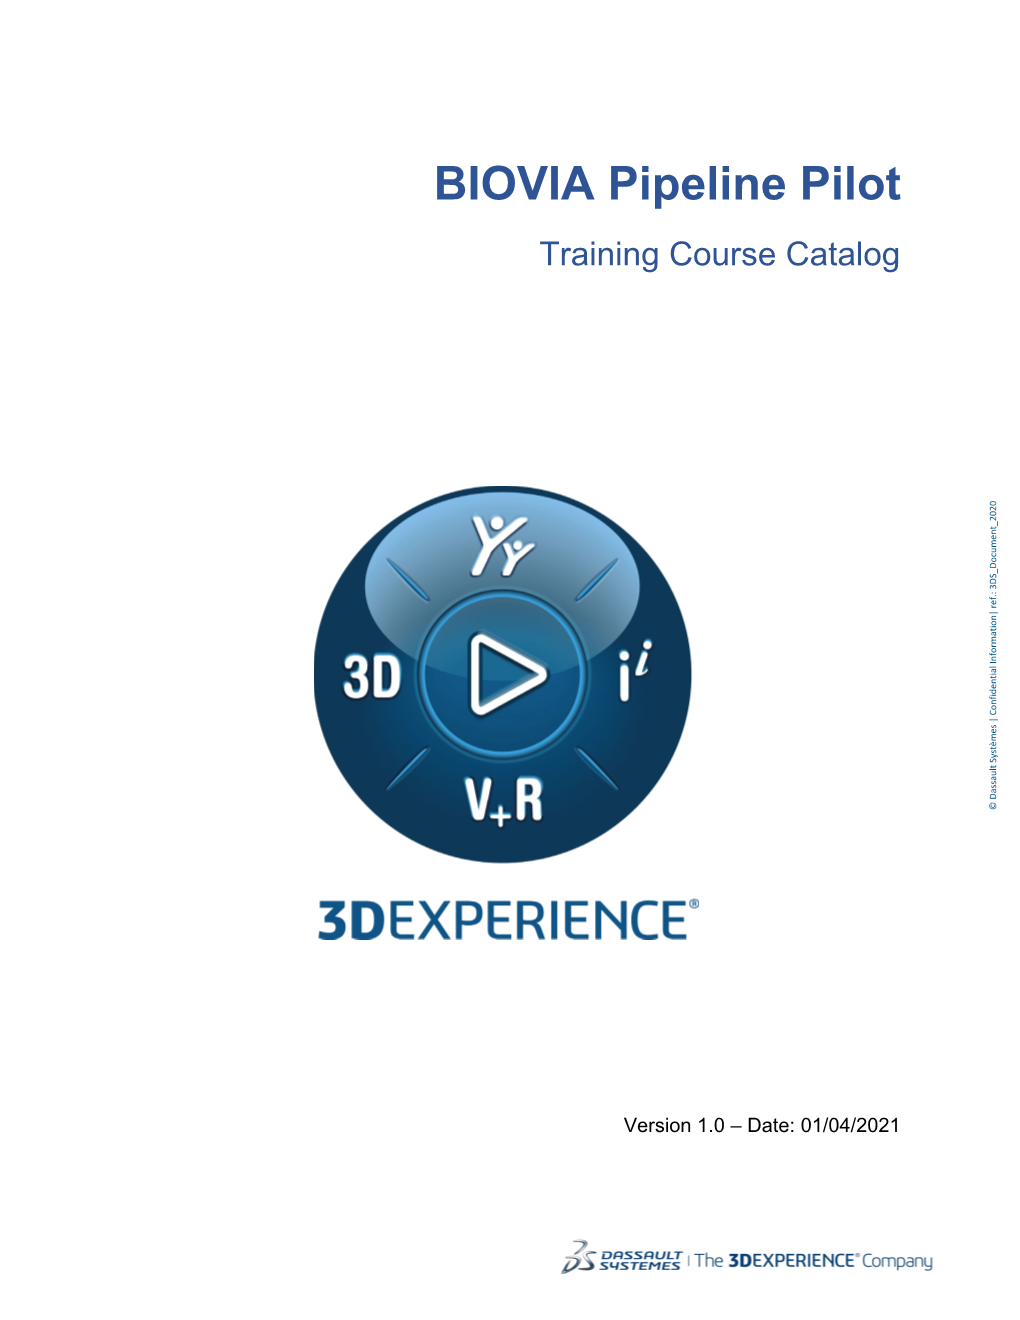 BIOVIA Pipeline Pilot Training Course Catalog